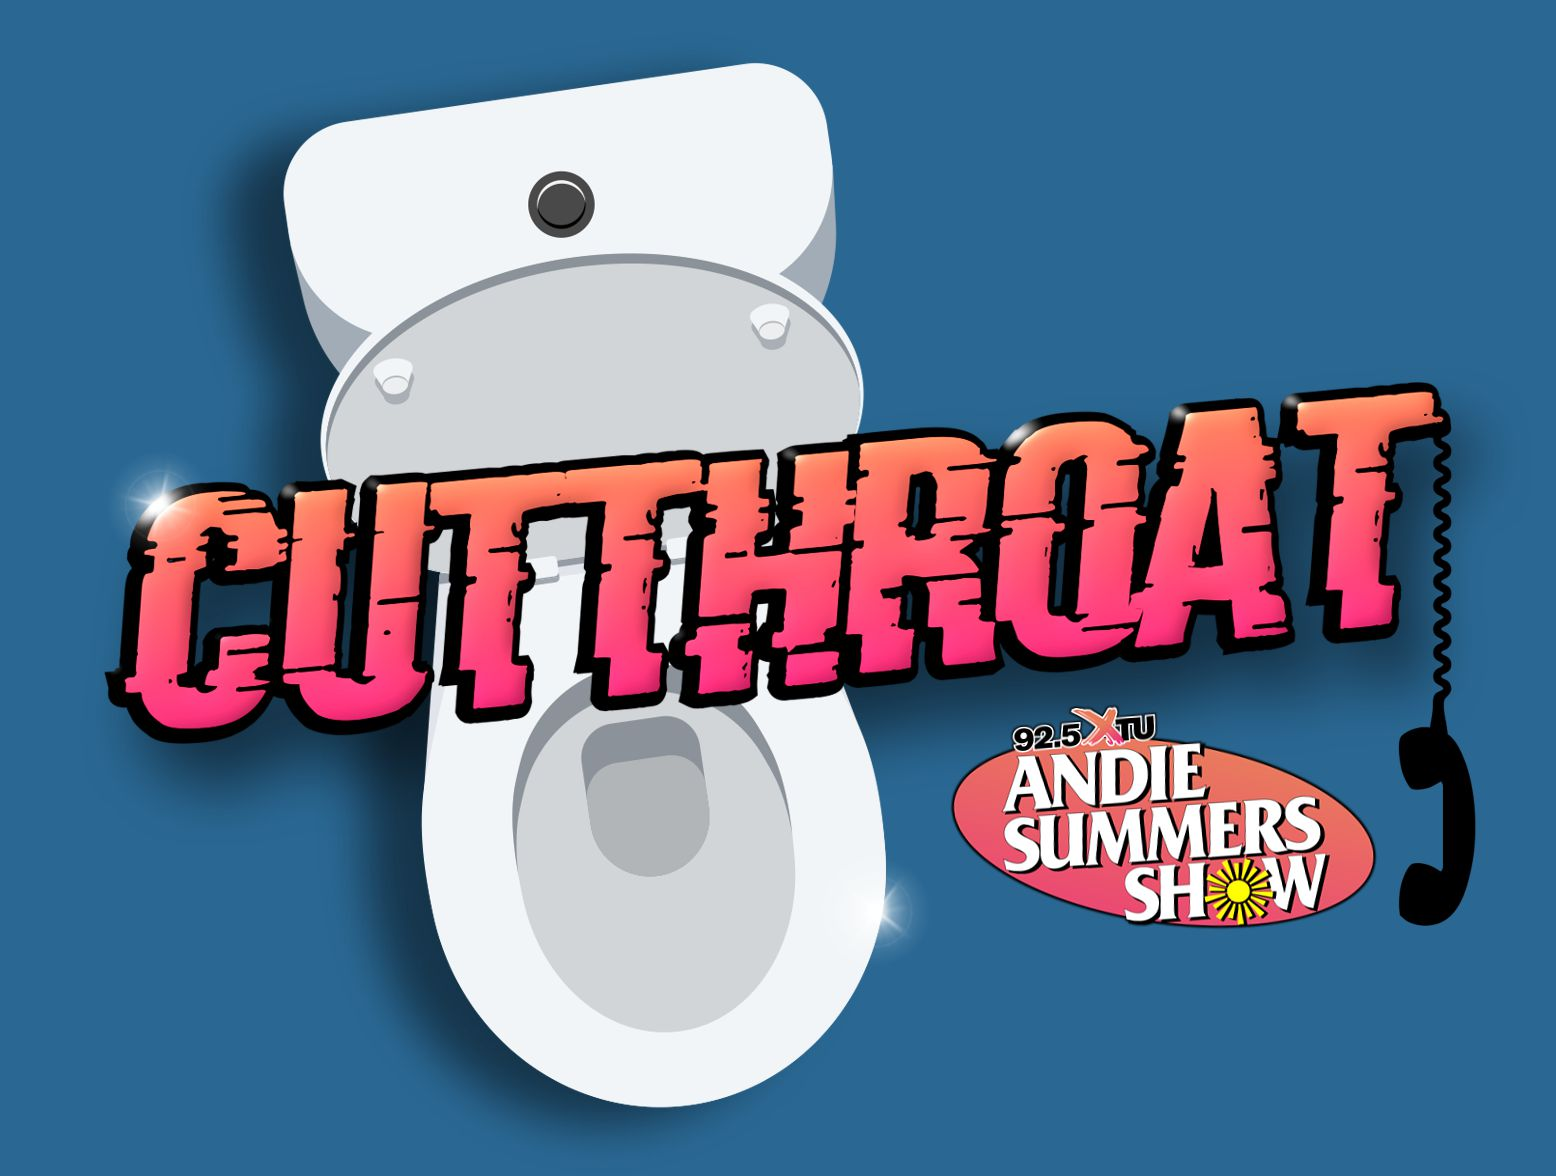 Cutthroat: Rose Trivia